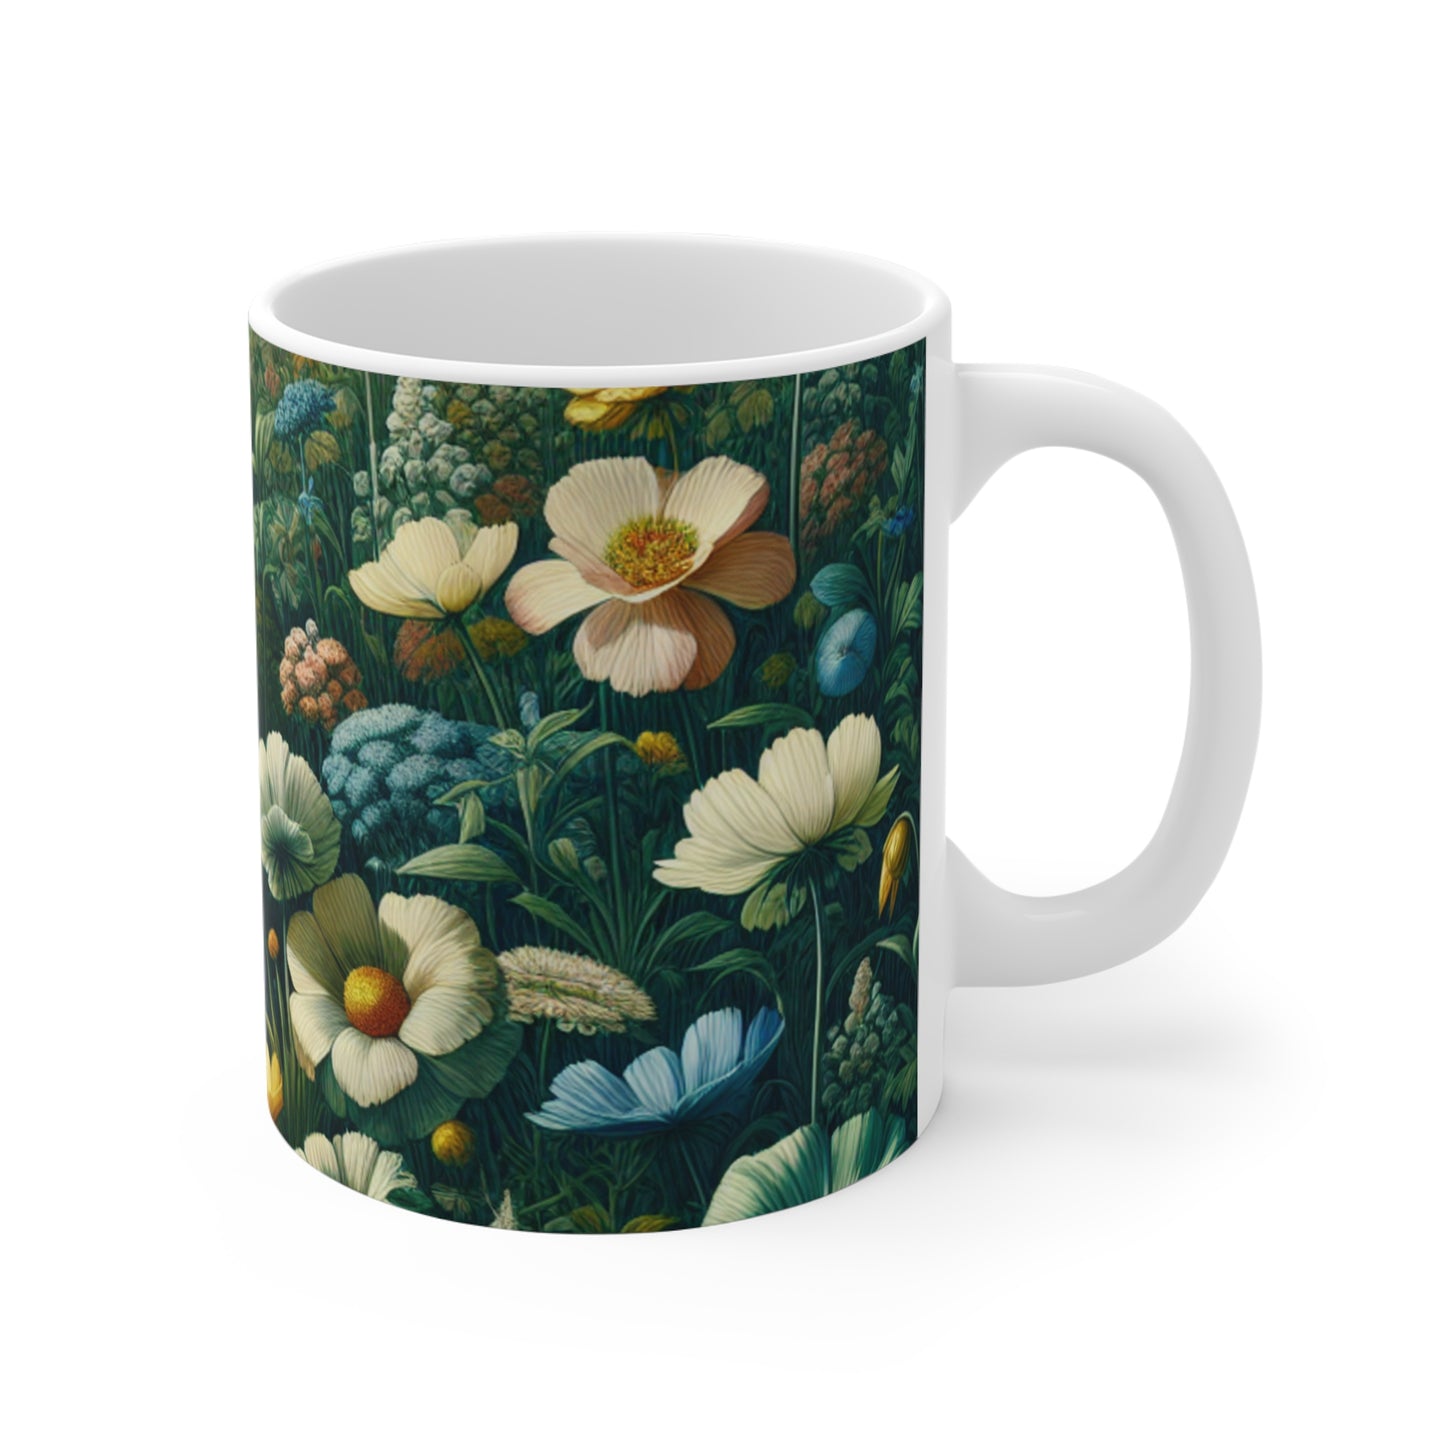 Enchanted Garden Mug